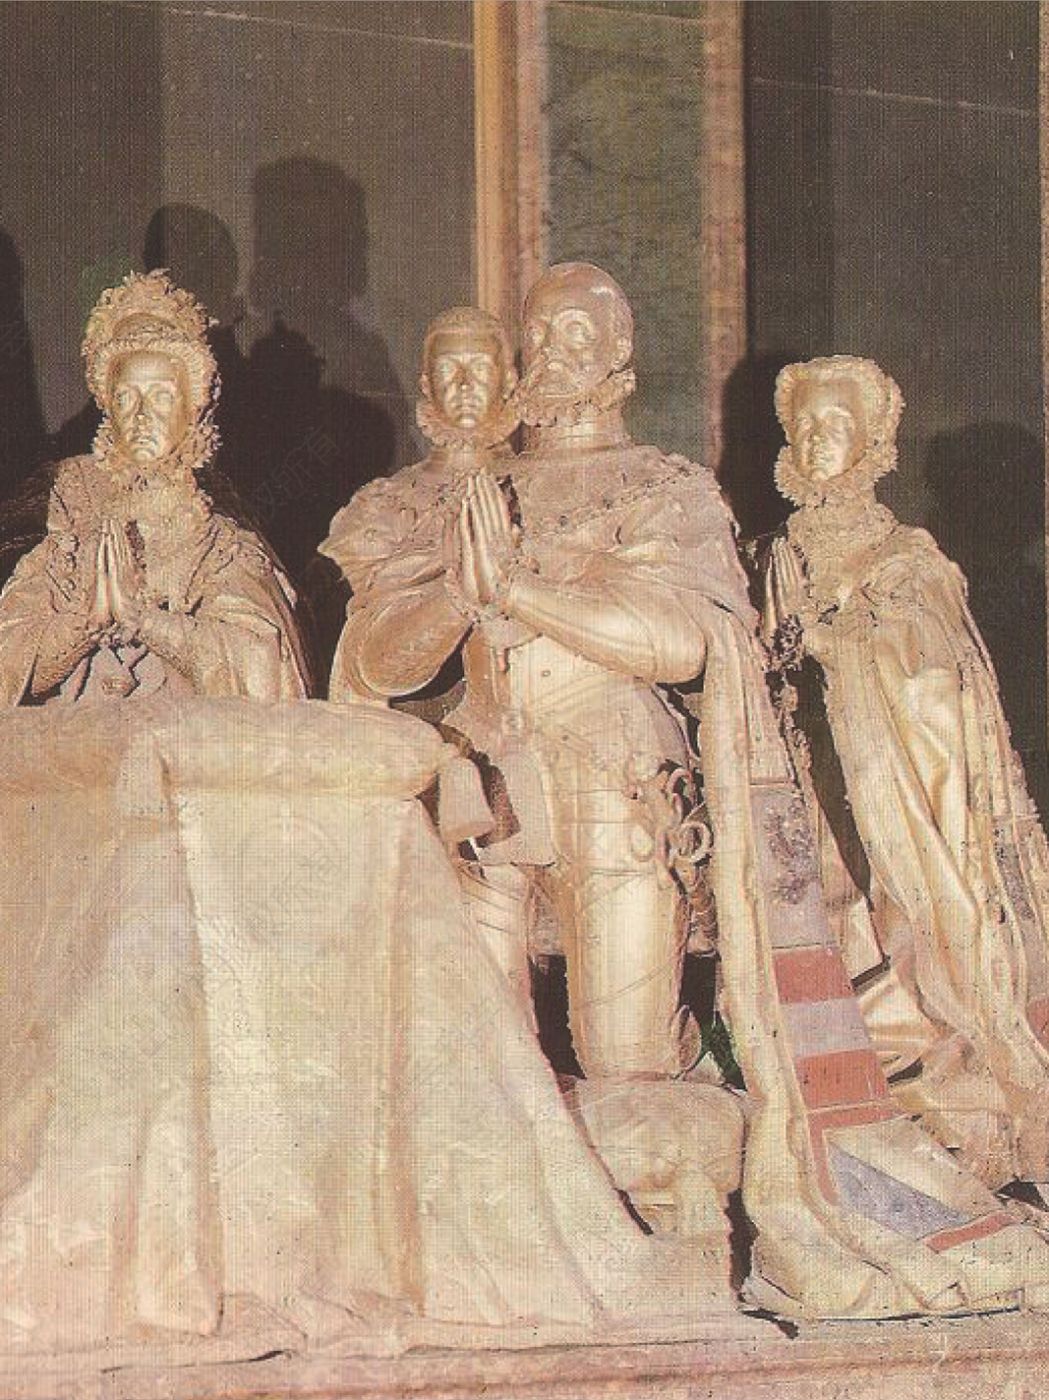 9.埃斯科里亚尔的腓力二世及其家人的葬礼雕像，蓬佩奥·莱昂尼作，1597～1600年。莱昂尼在把这三尊巨大的铜像安装到主祭坛左侧之前，腓力二世就驾崩了，不过他生前就批准了雕像的设计。国王的雕像显得衰老、秃顶和疲惫（不过穿着四十年前征战时穿过的金碧辉煌的铠甲）。他的第四任妻子安娜跪在他旁边，她的前任玛丽亚·曼努埃拉和伊莎贝拉在后面，而堂卡洛斯在国王背后，看上去像是腓力二世渴望得到的那种孝子。